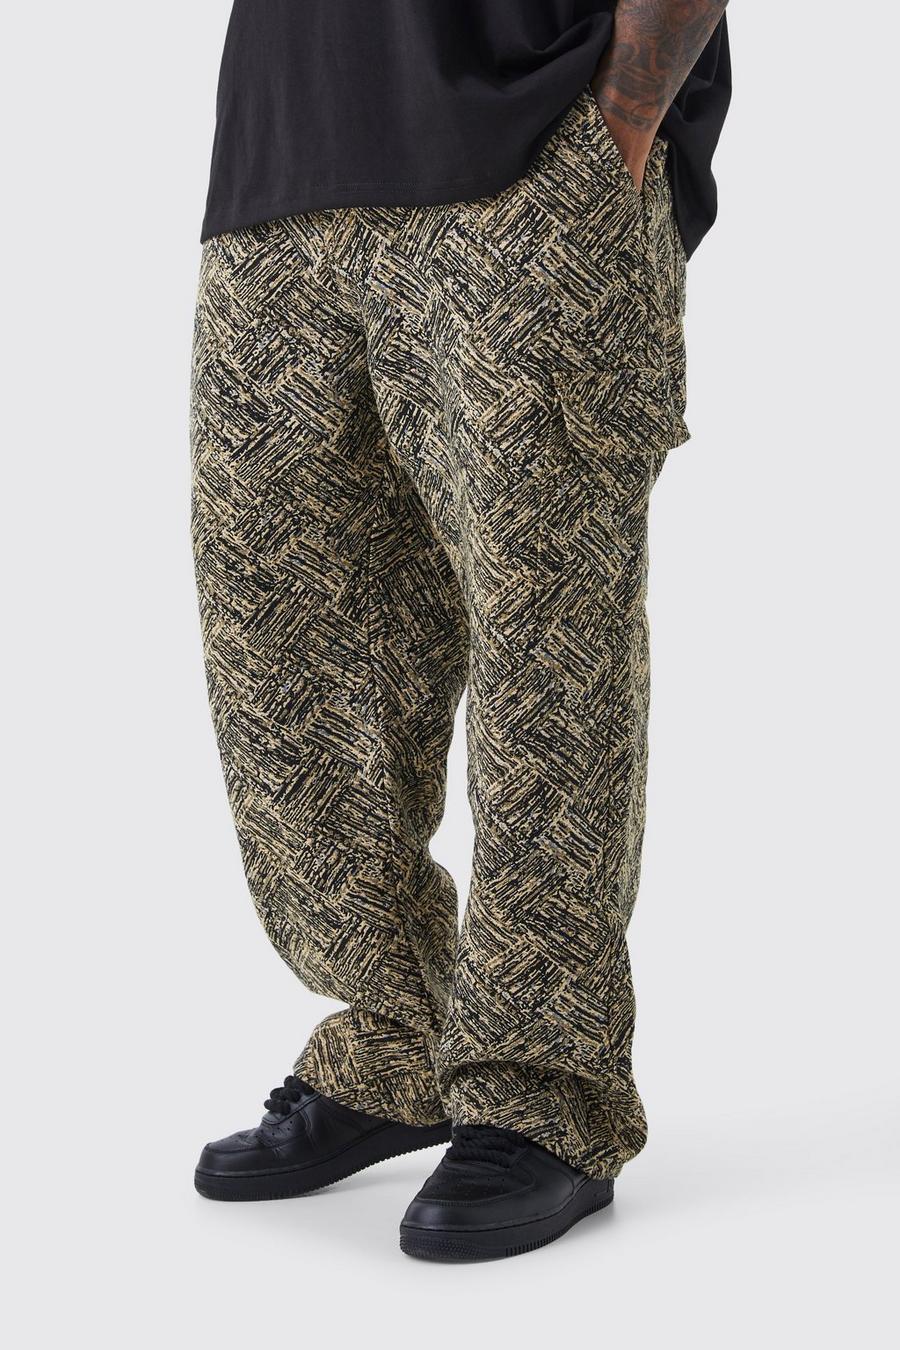 Pantalón Plus holgado con estampado de tapiz, Black